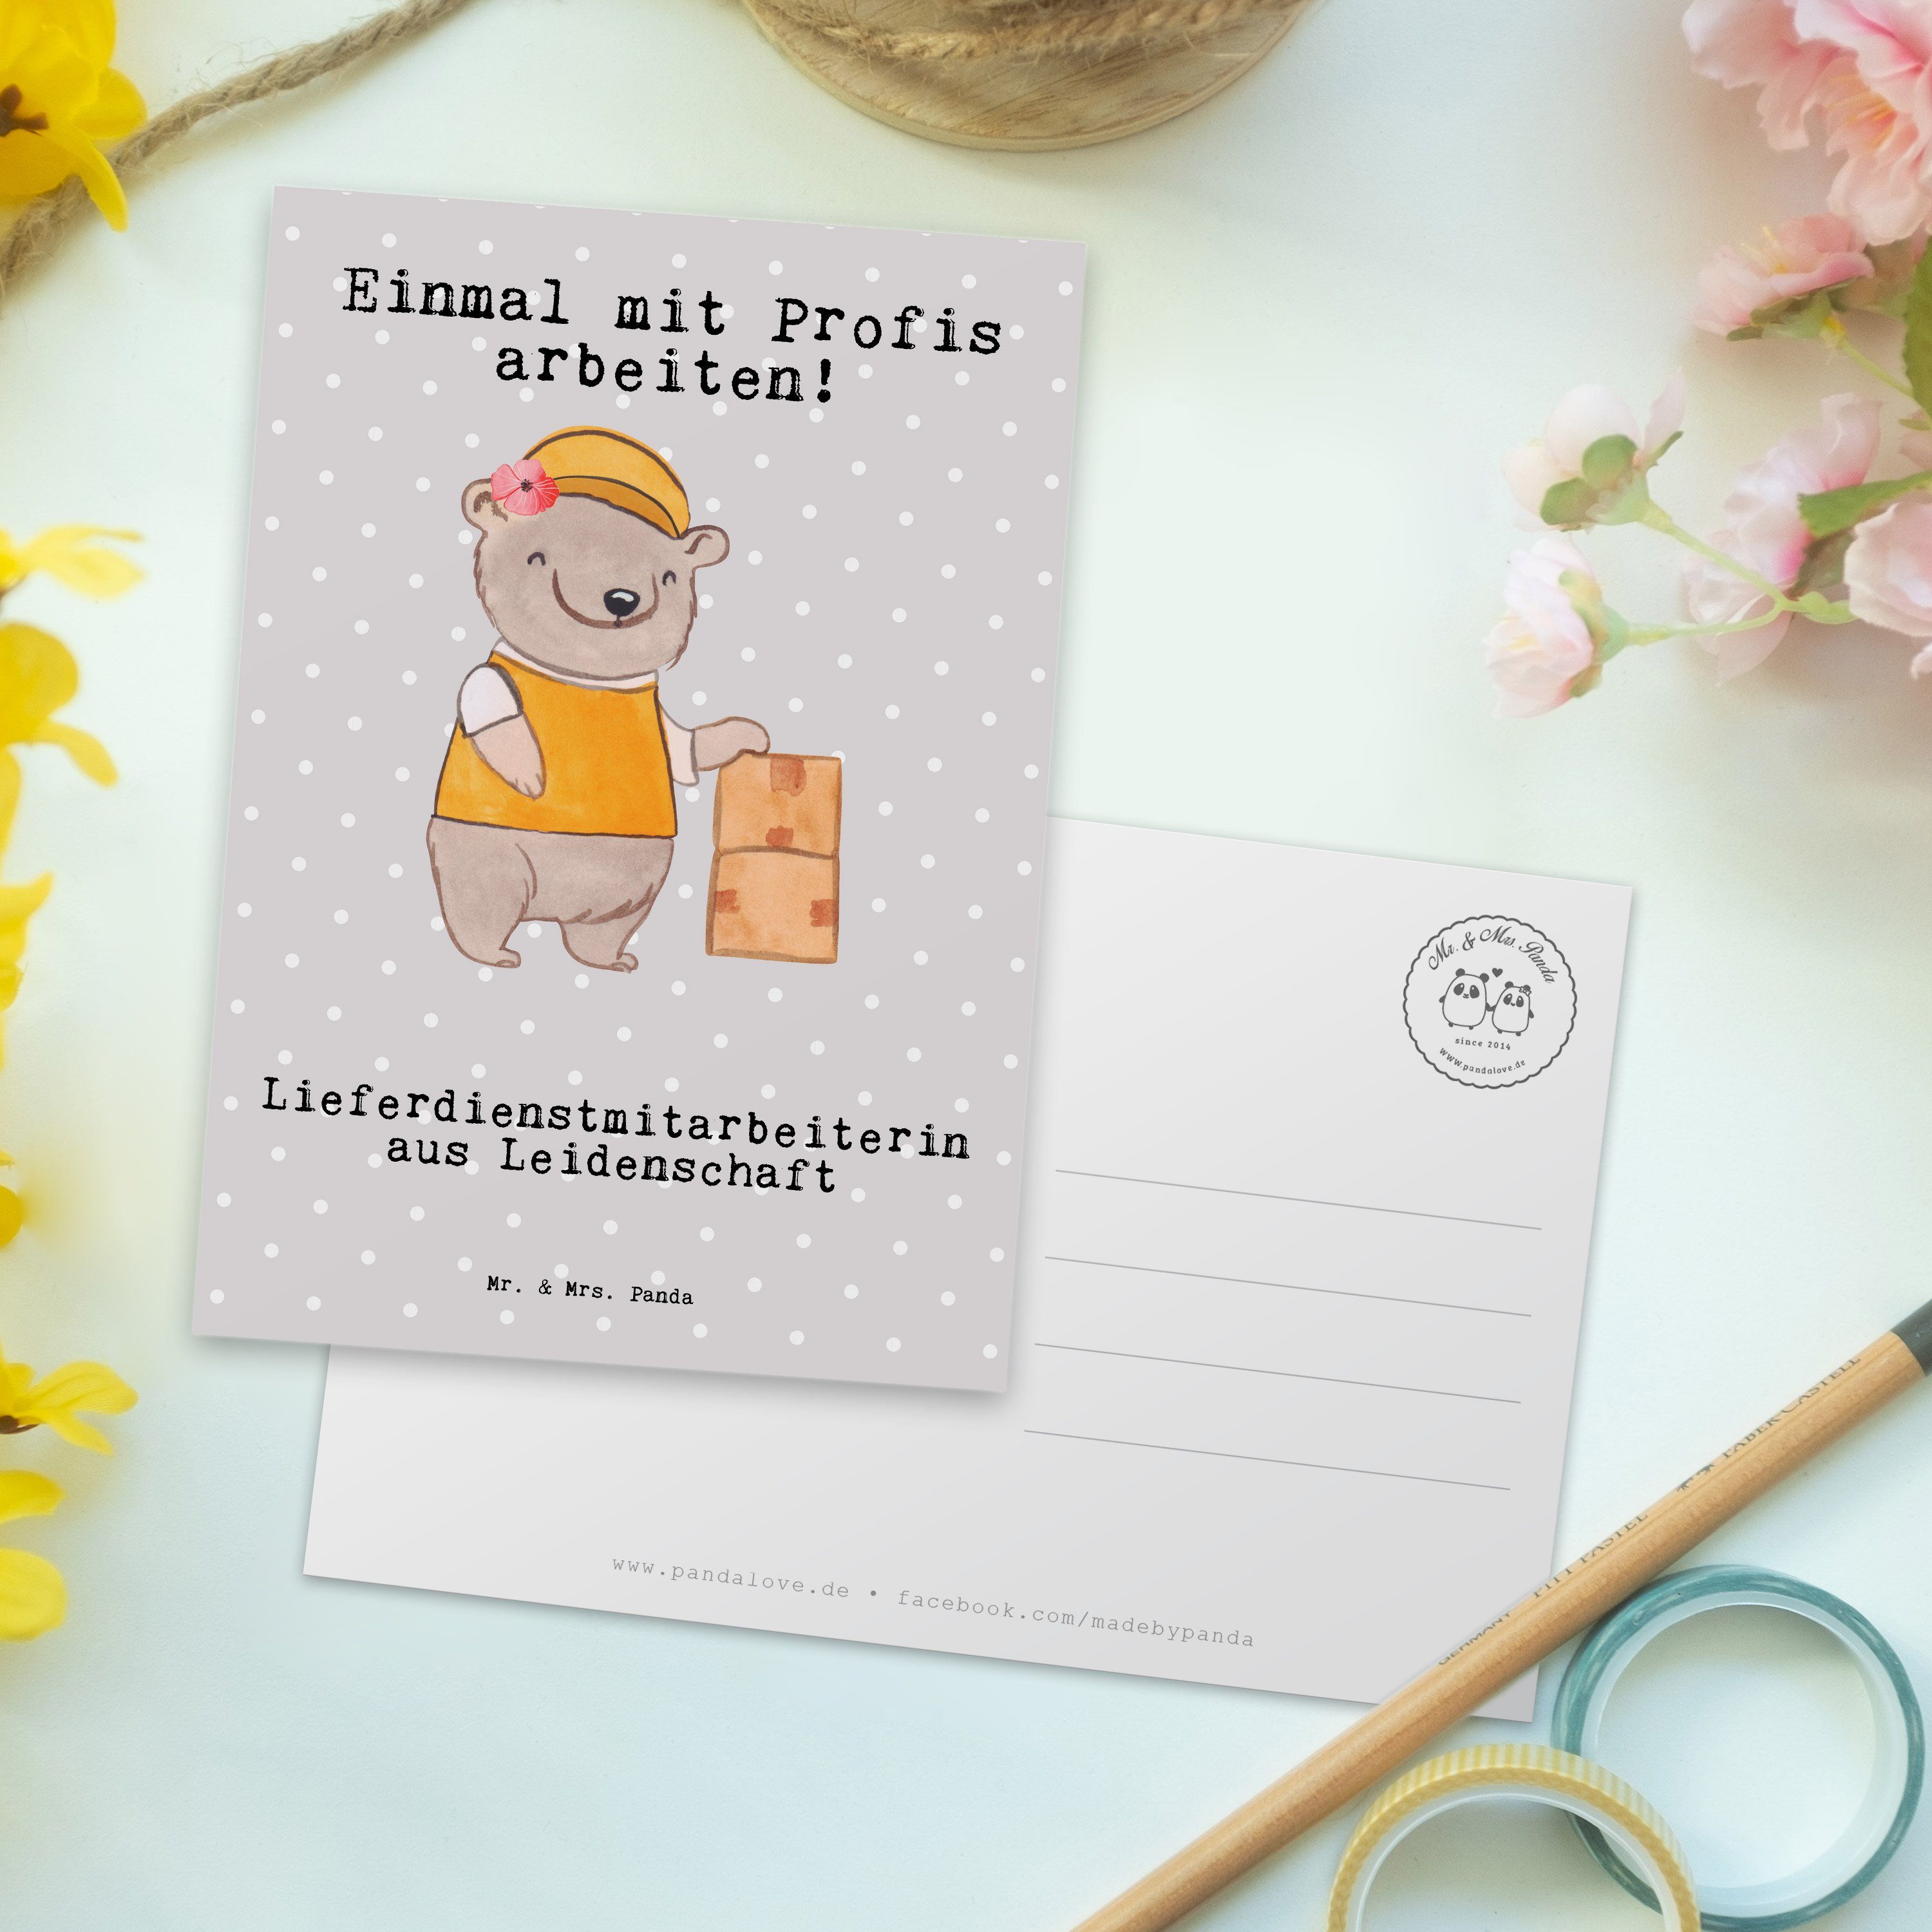 Mr. & Mrs. Panda aus Grau Geschenk Postkarte - Pastell Lieferdienstmitarbeiterin Leidenschaft 